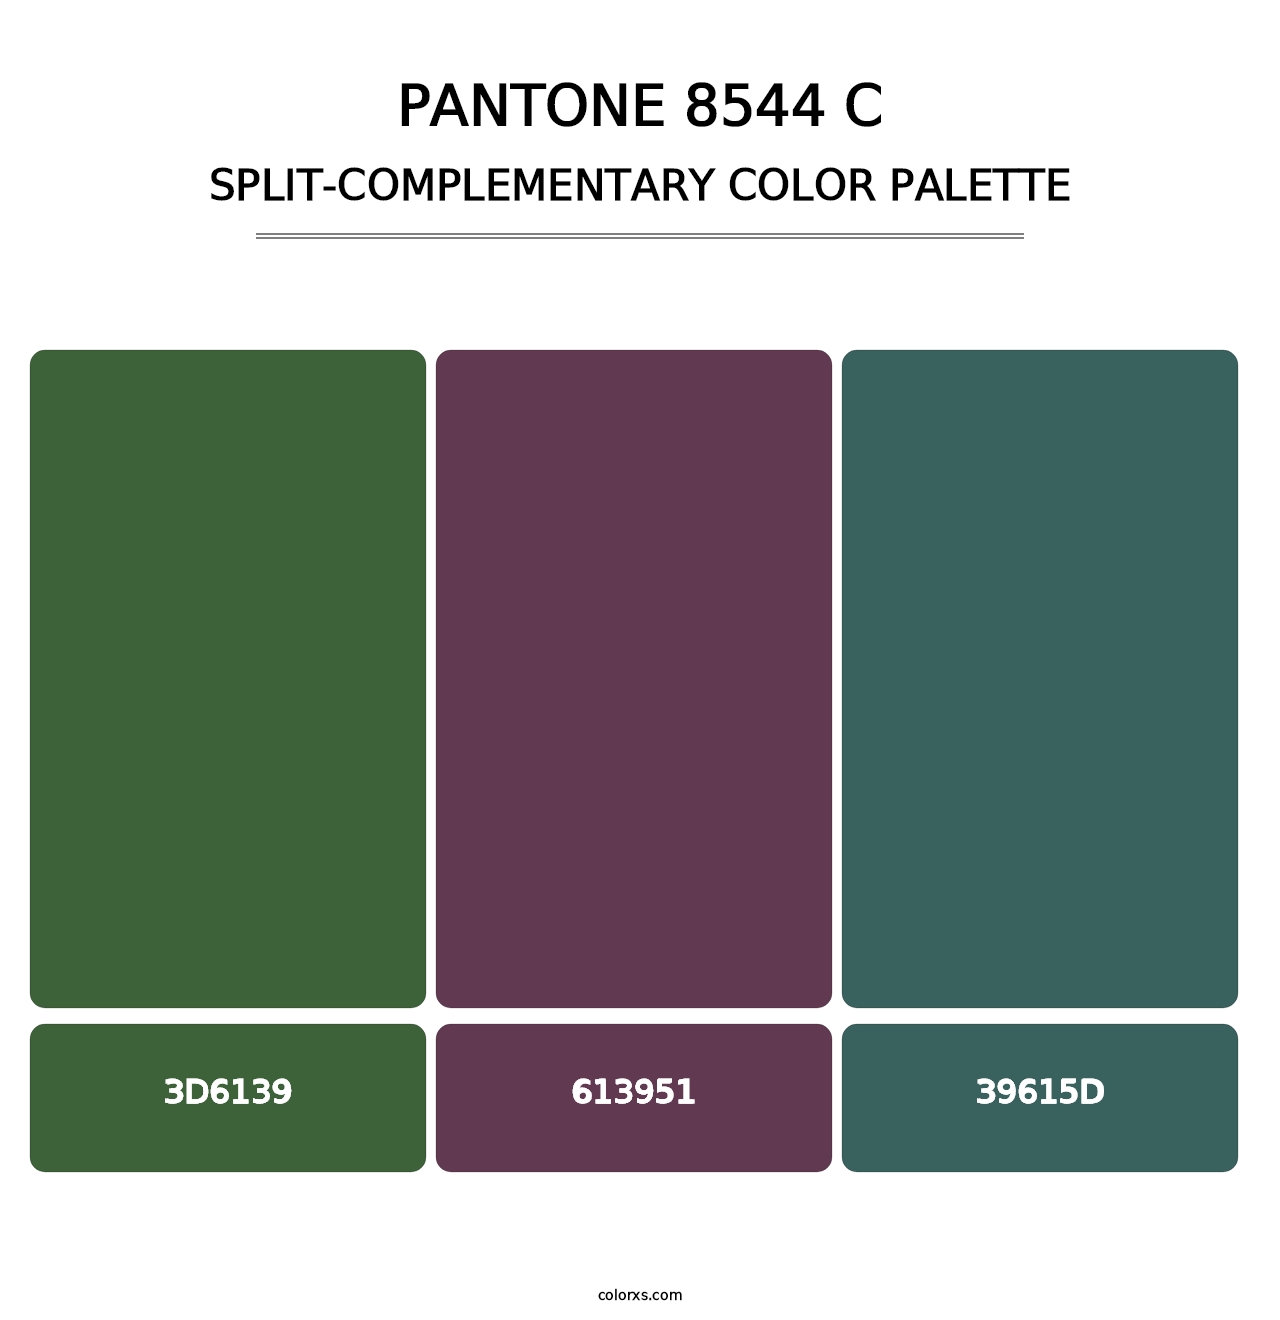 PANTONE 8544 C - Split-Complementary Color Palette